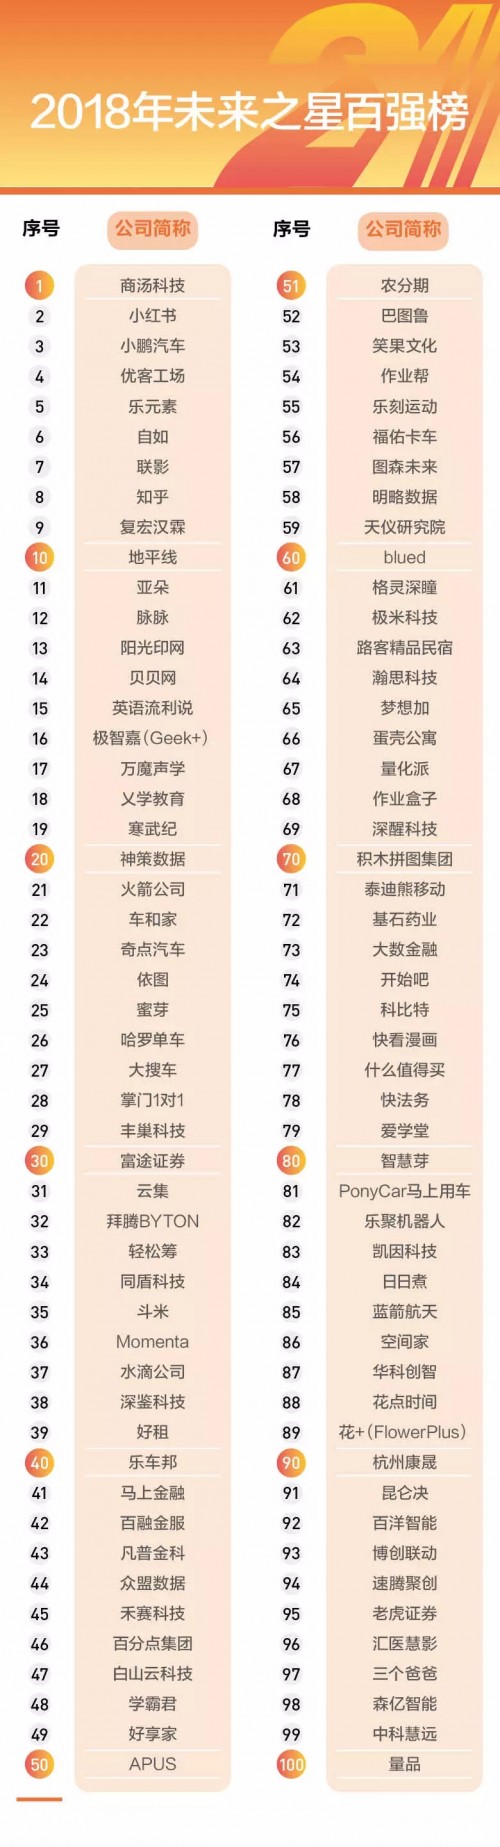 众盟数据荣登中国企业家21未来之星100强榜单